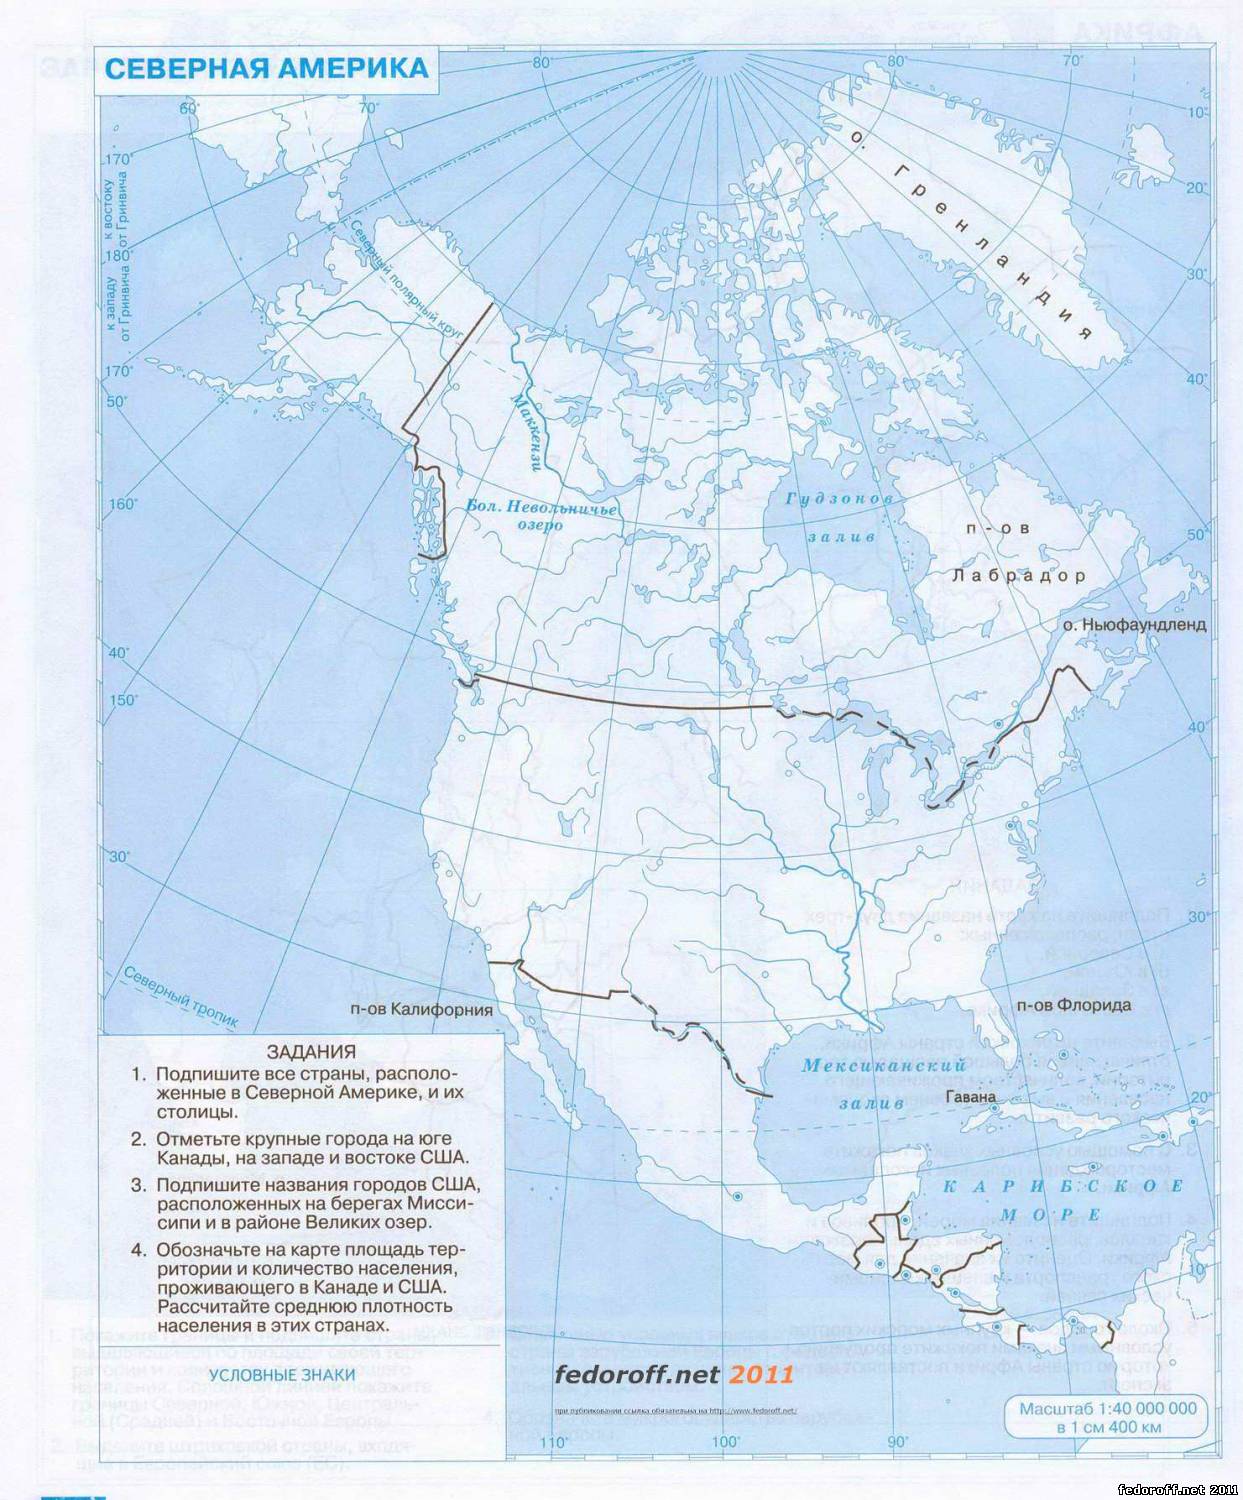 Контурная карта по географии 7 класс страница 46